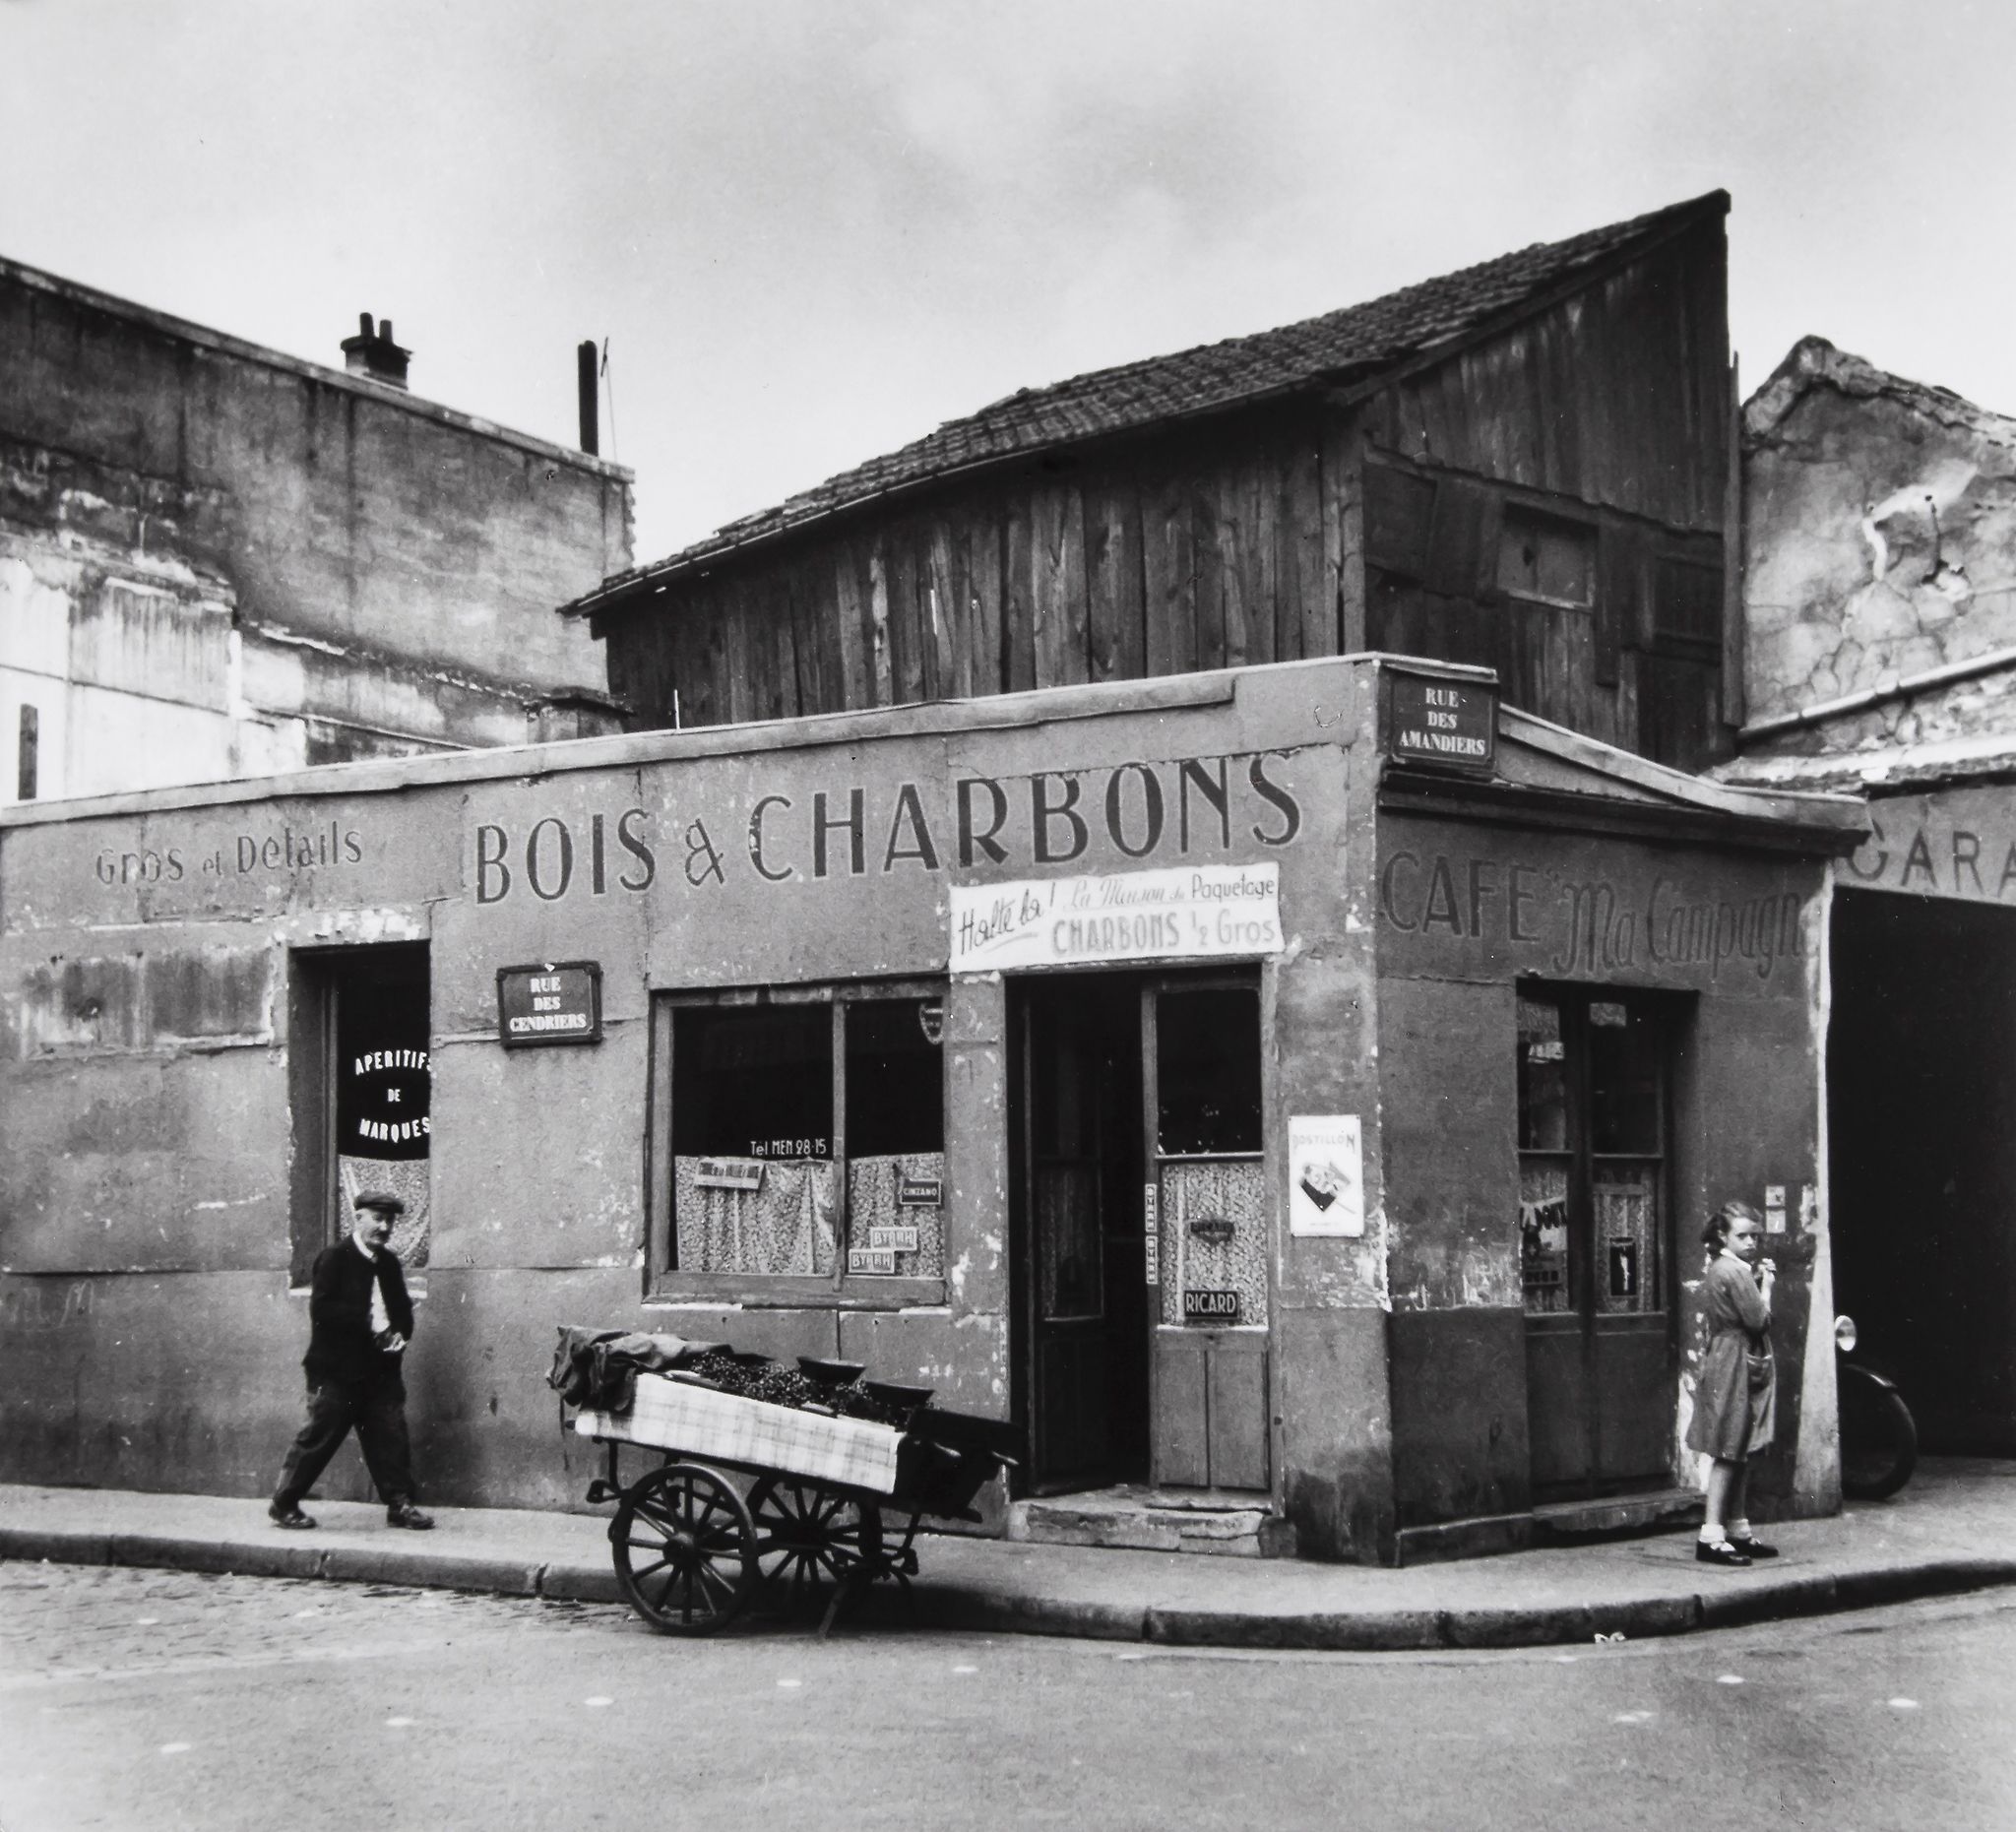 Café "Ma Campagne", à l'angle de la rue des Cendriers et de la rue des Amandiers